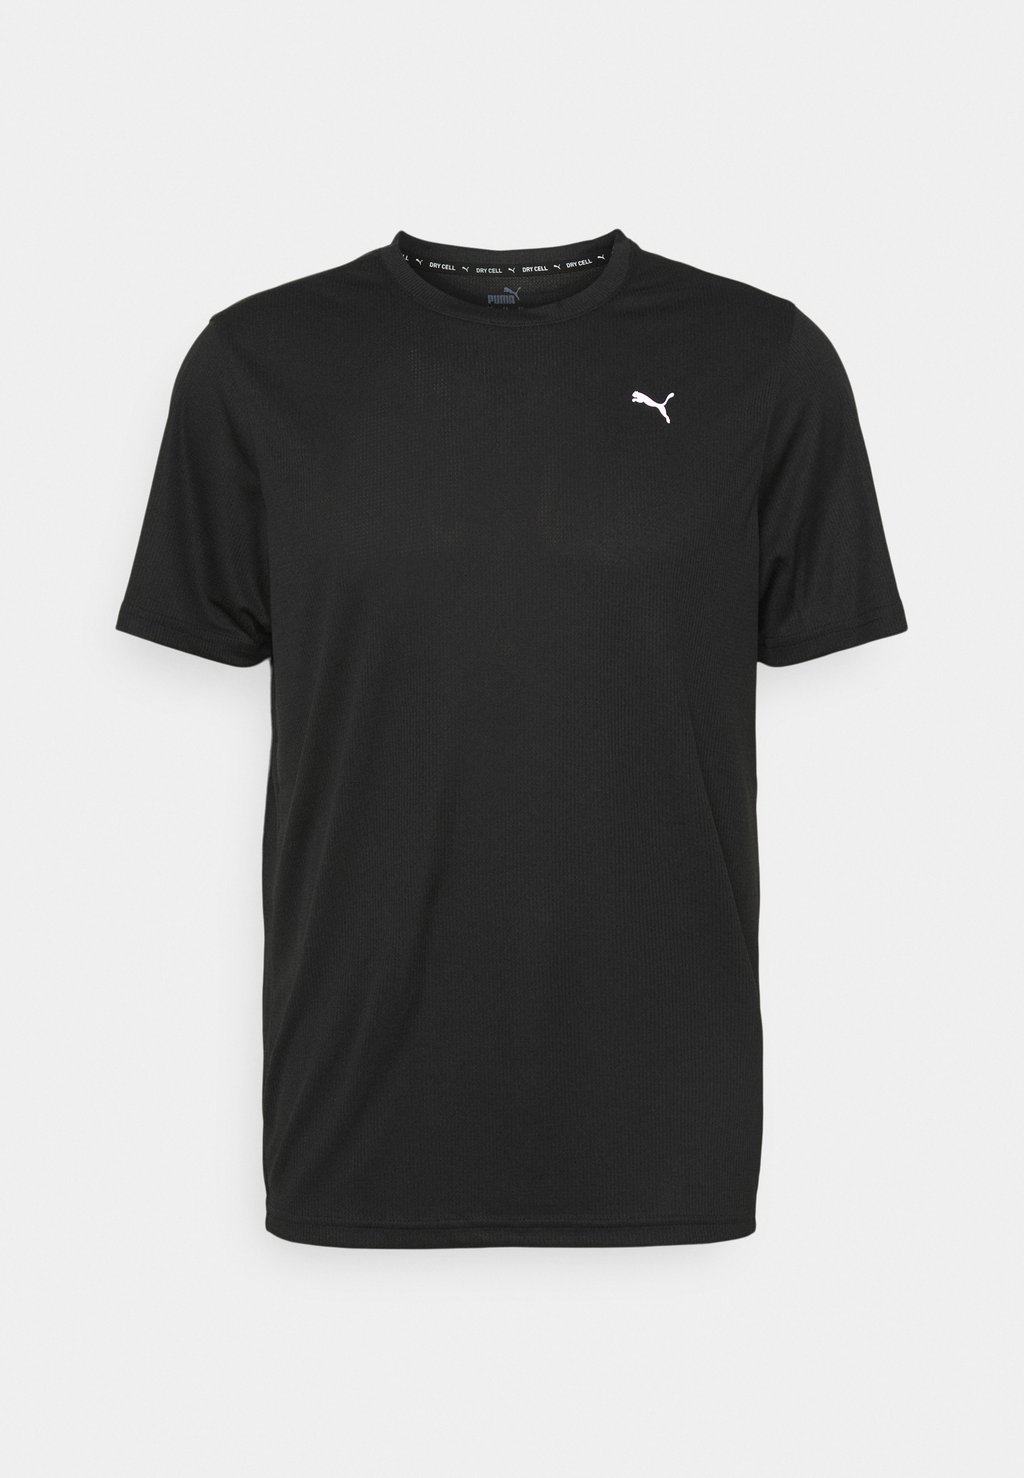 цена Спортивная футболка PERFORMANCE TEE Puma, черная